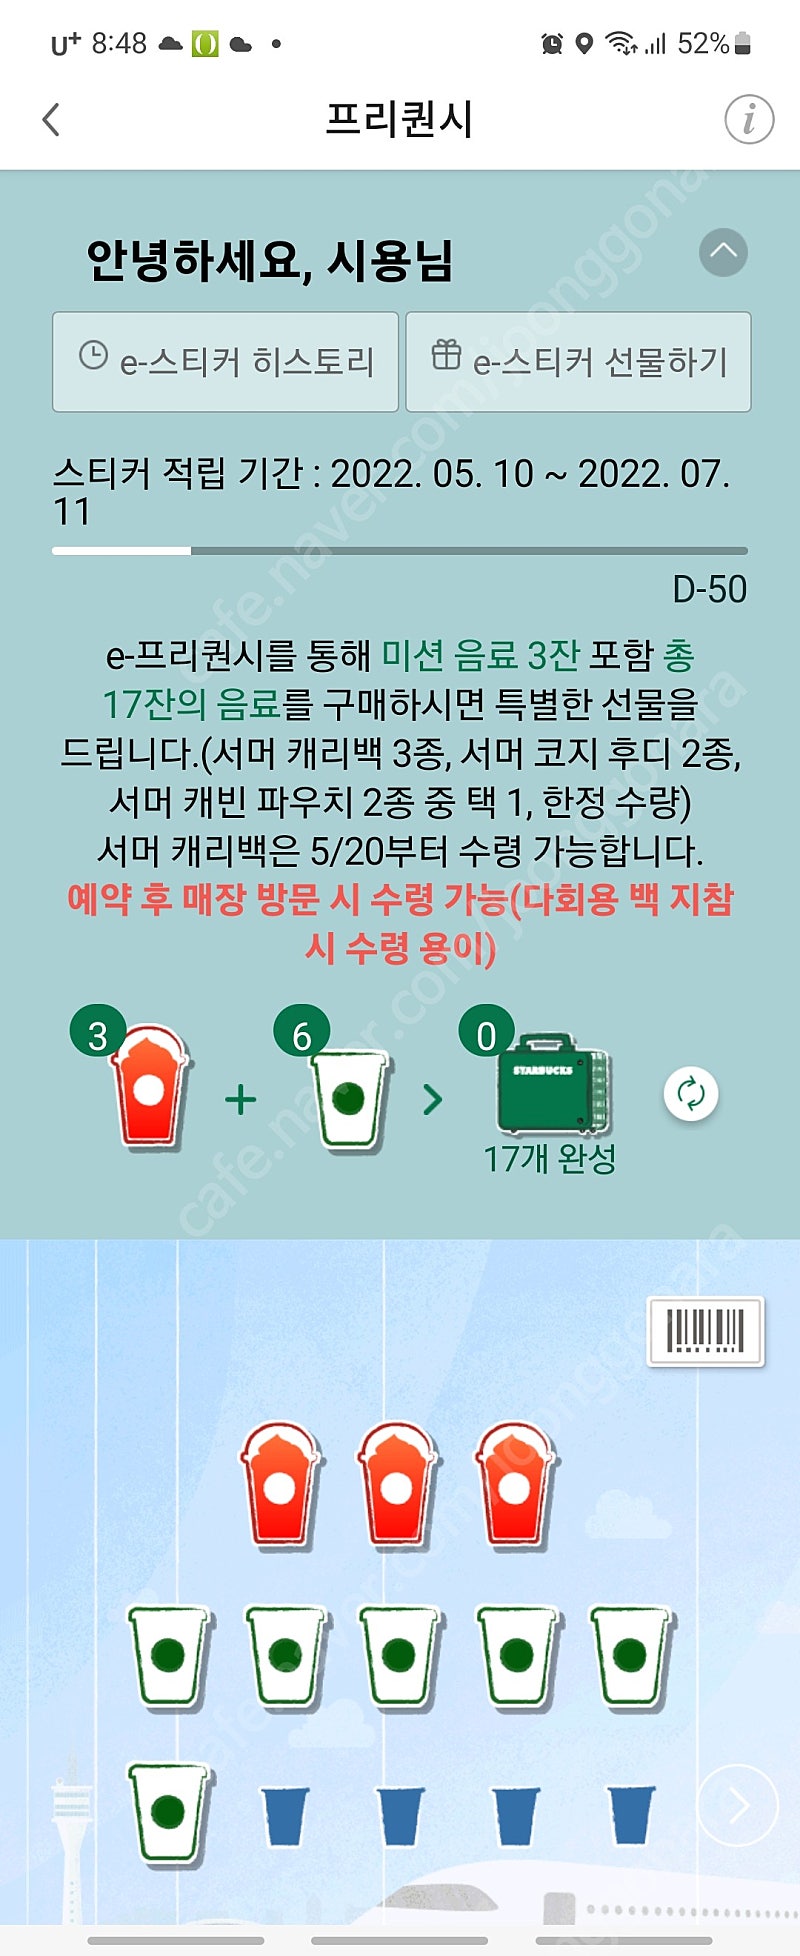 교환) 스타벅스 프리퀀시 주황 3개 -＞ 님 하양 6개